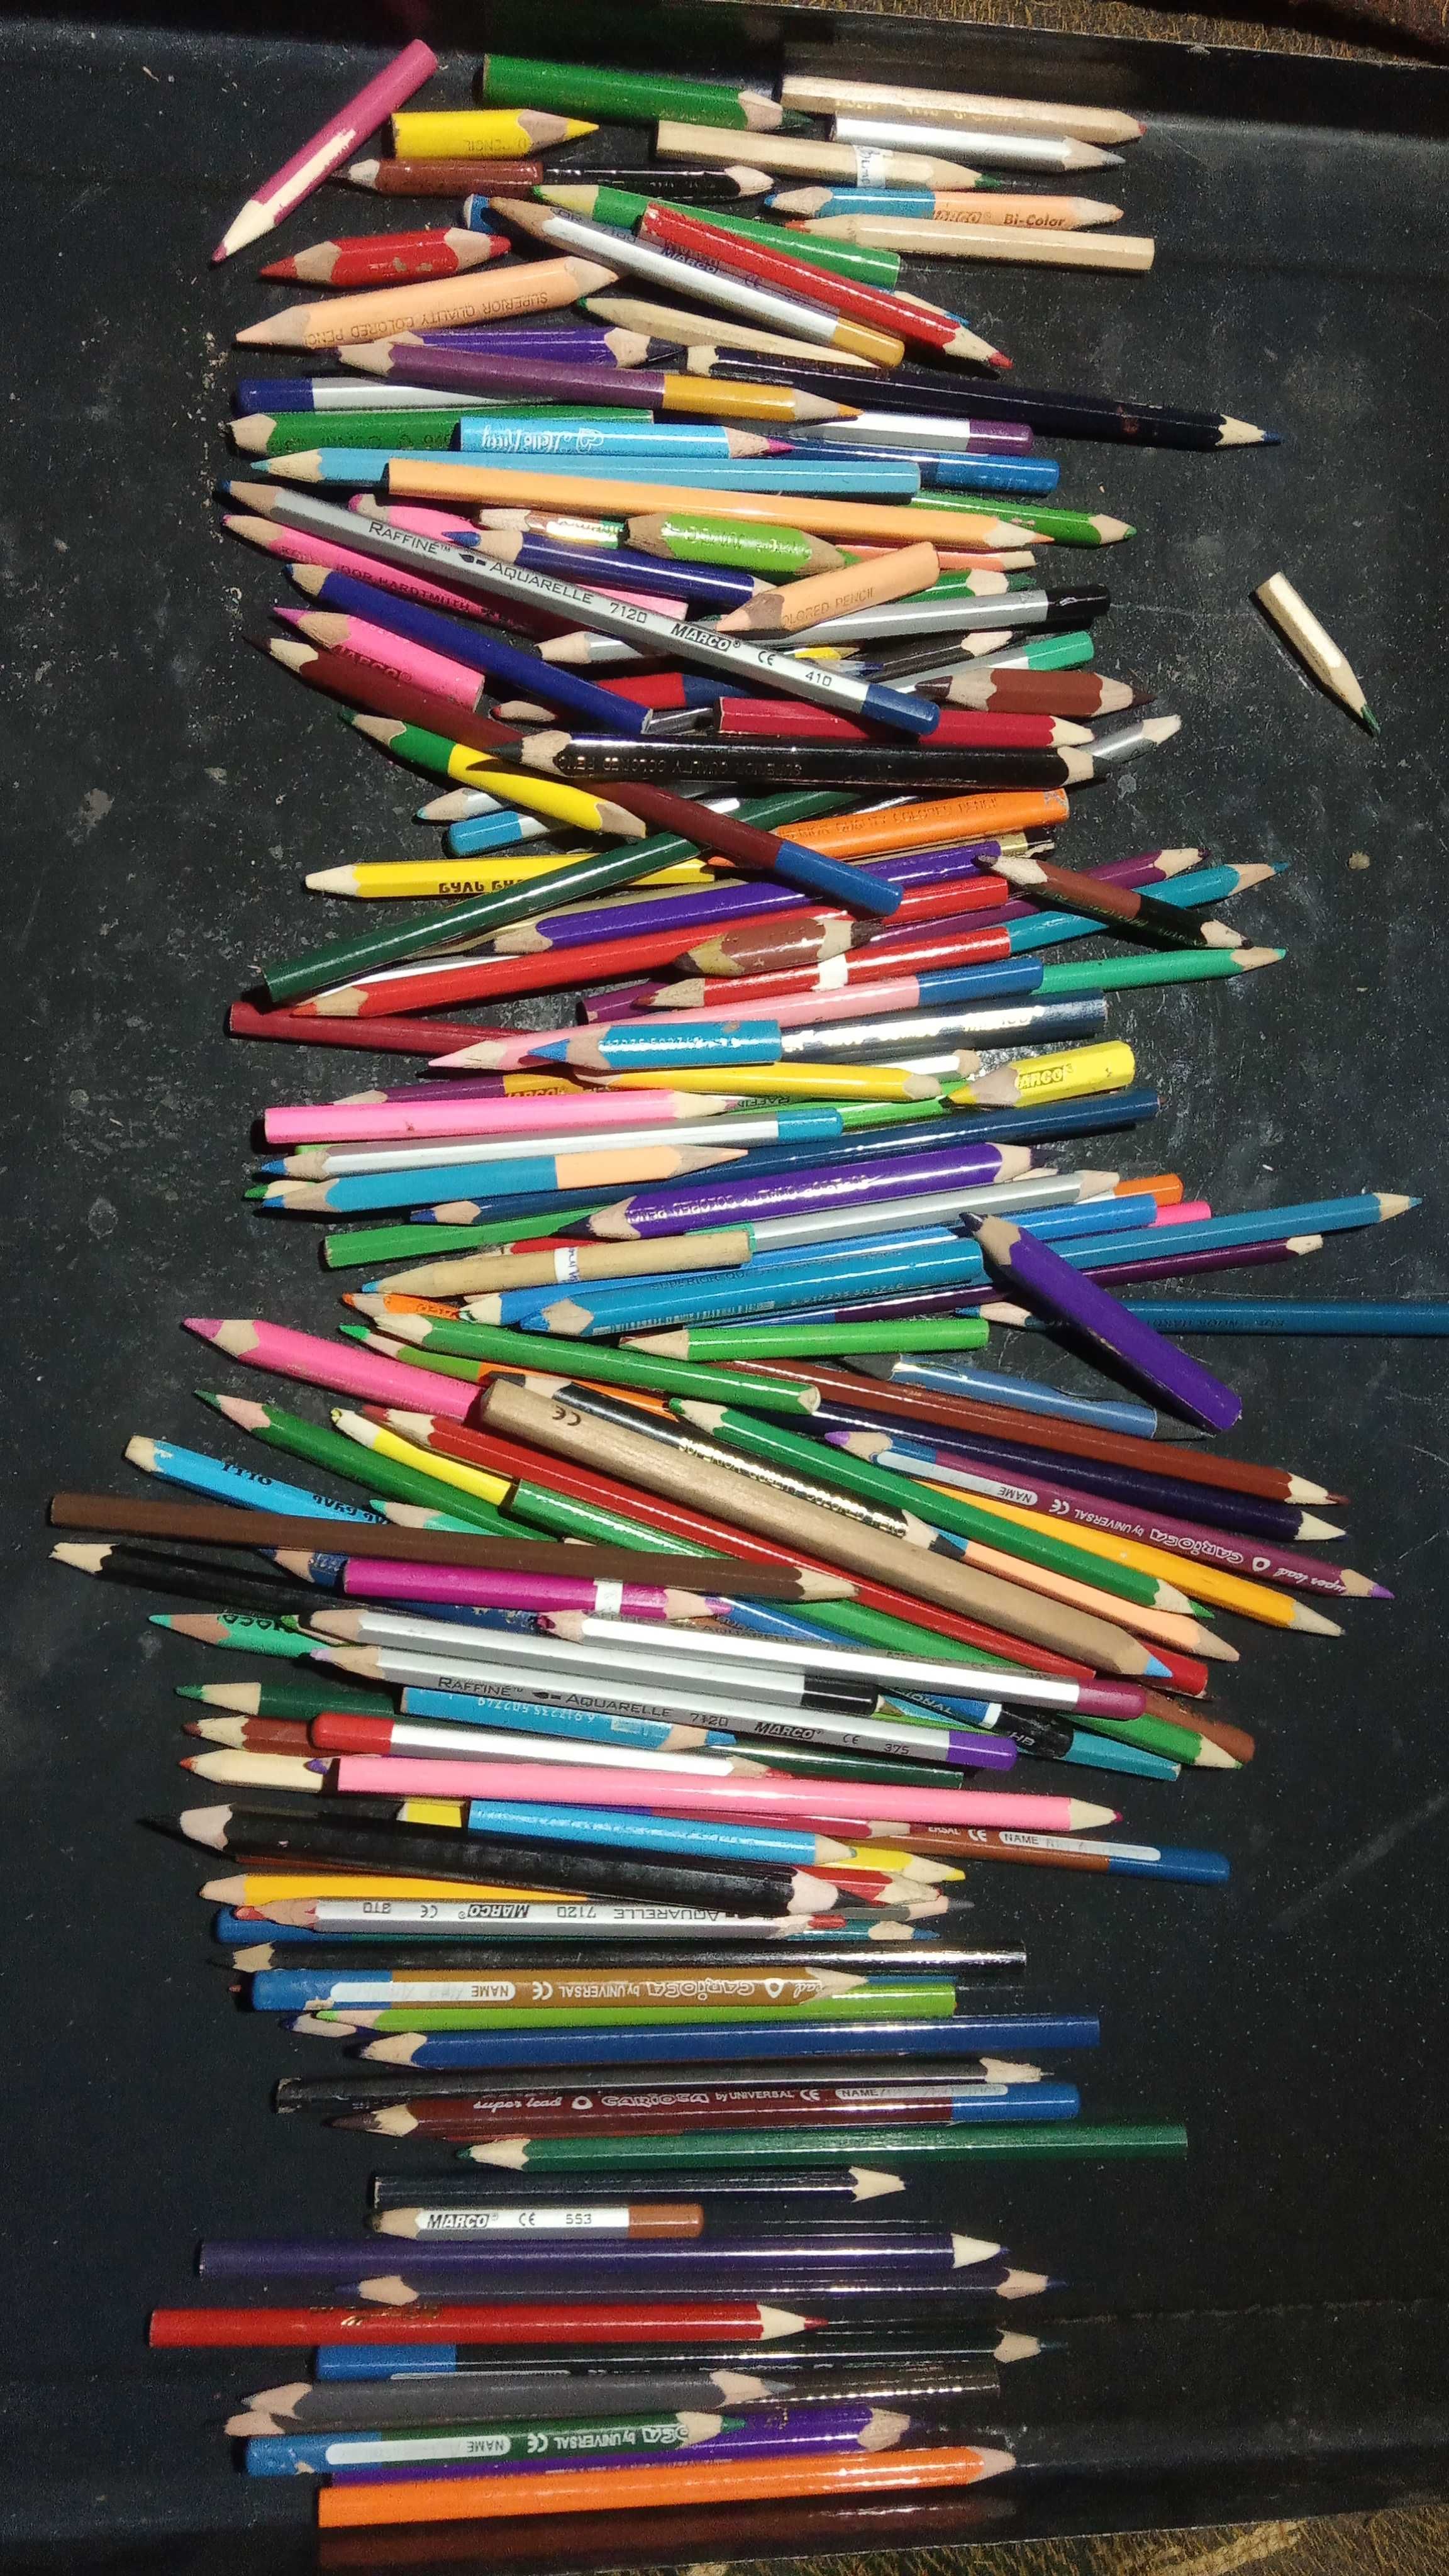 Художник набор карандаши разные много шт. одним лотом.